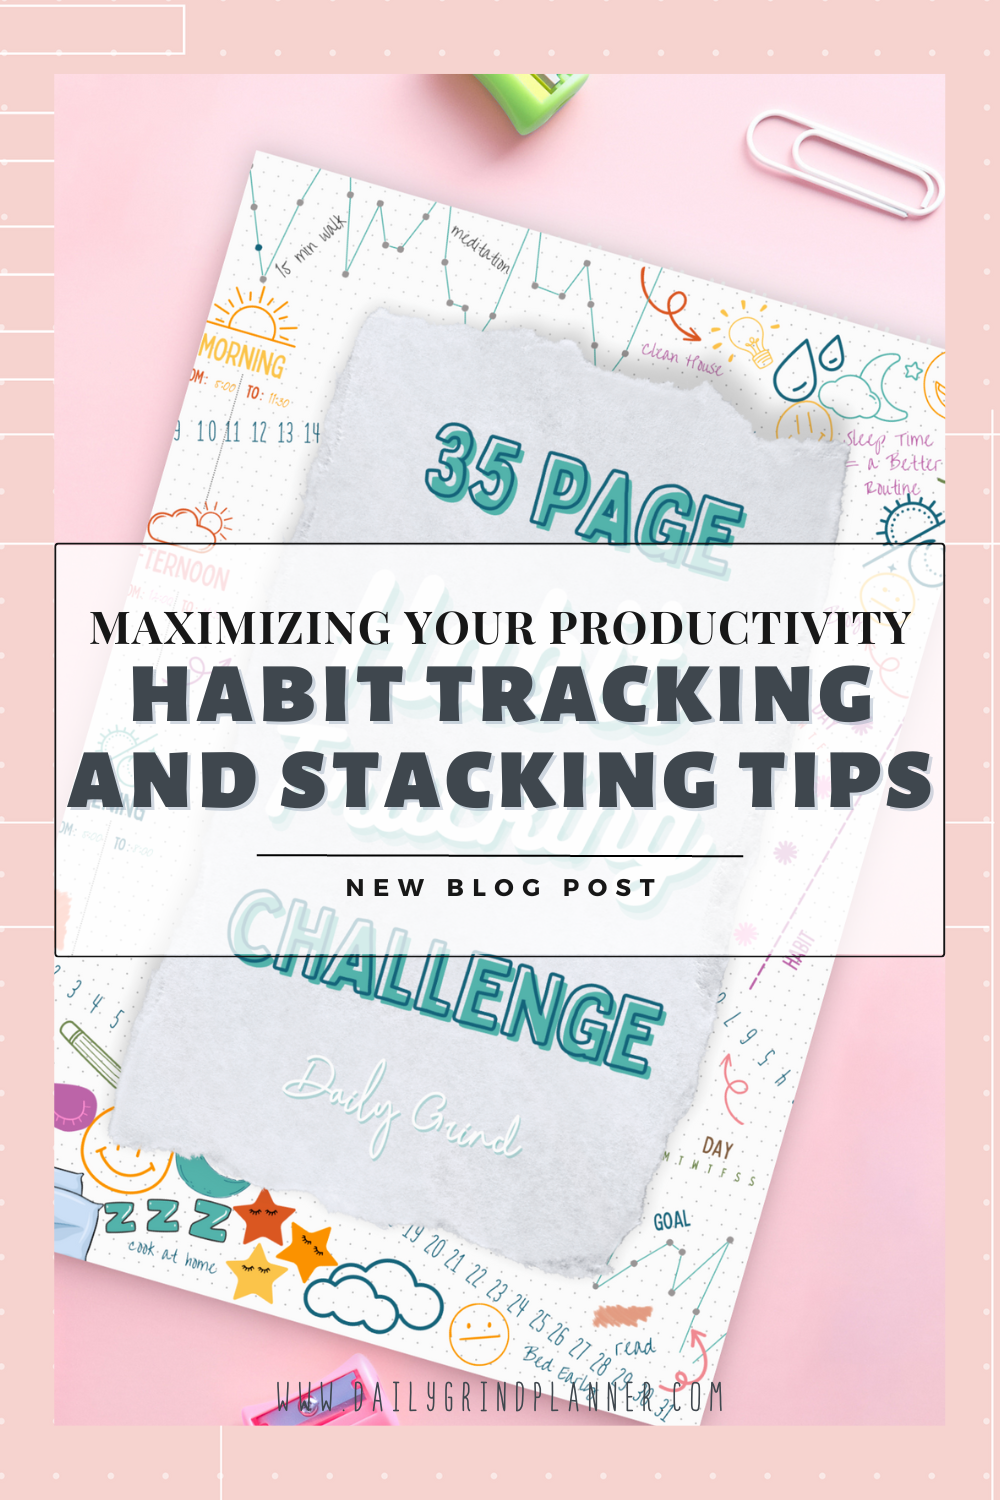 MAXIMIZING YOUR PRODUCTIVITY: HABIT TRACKING & STACKING TIPS